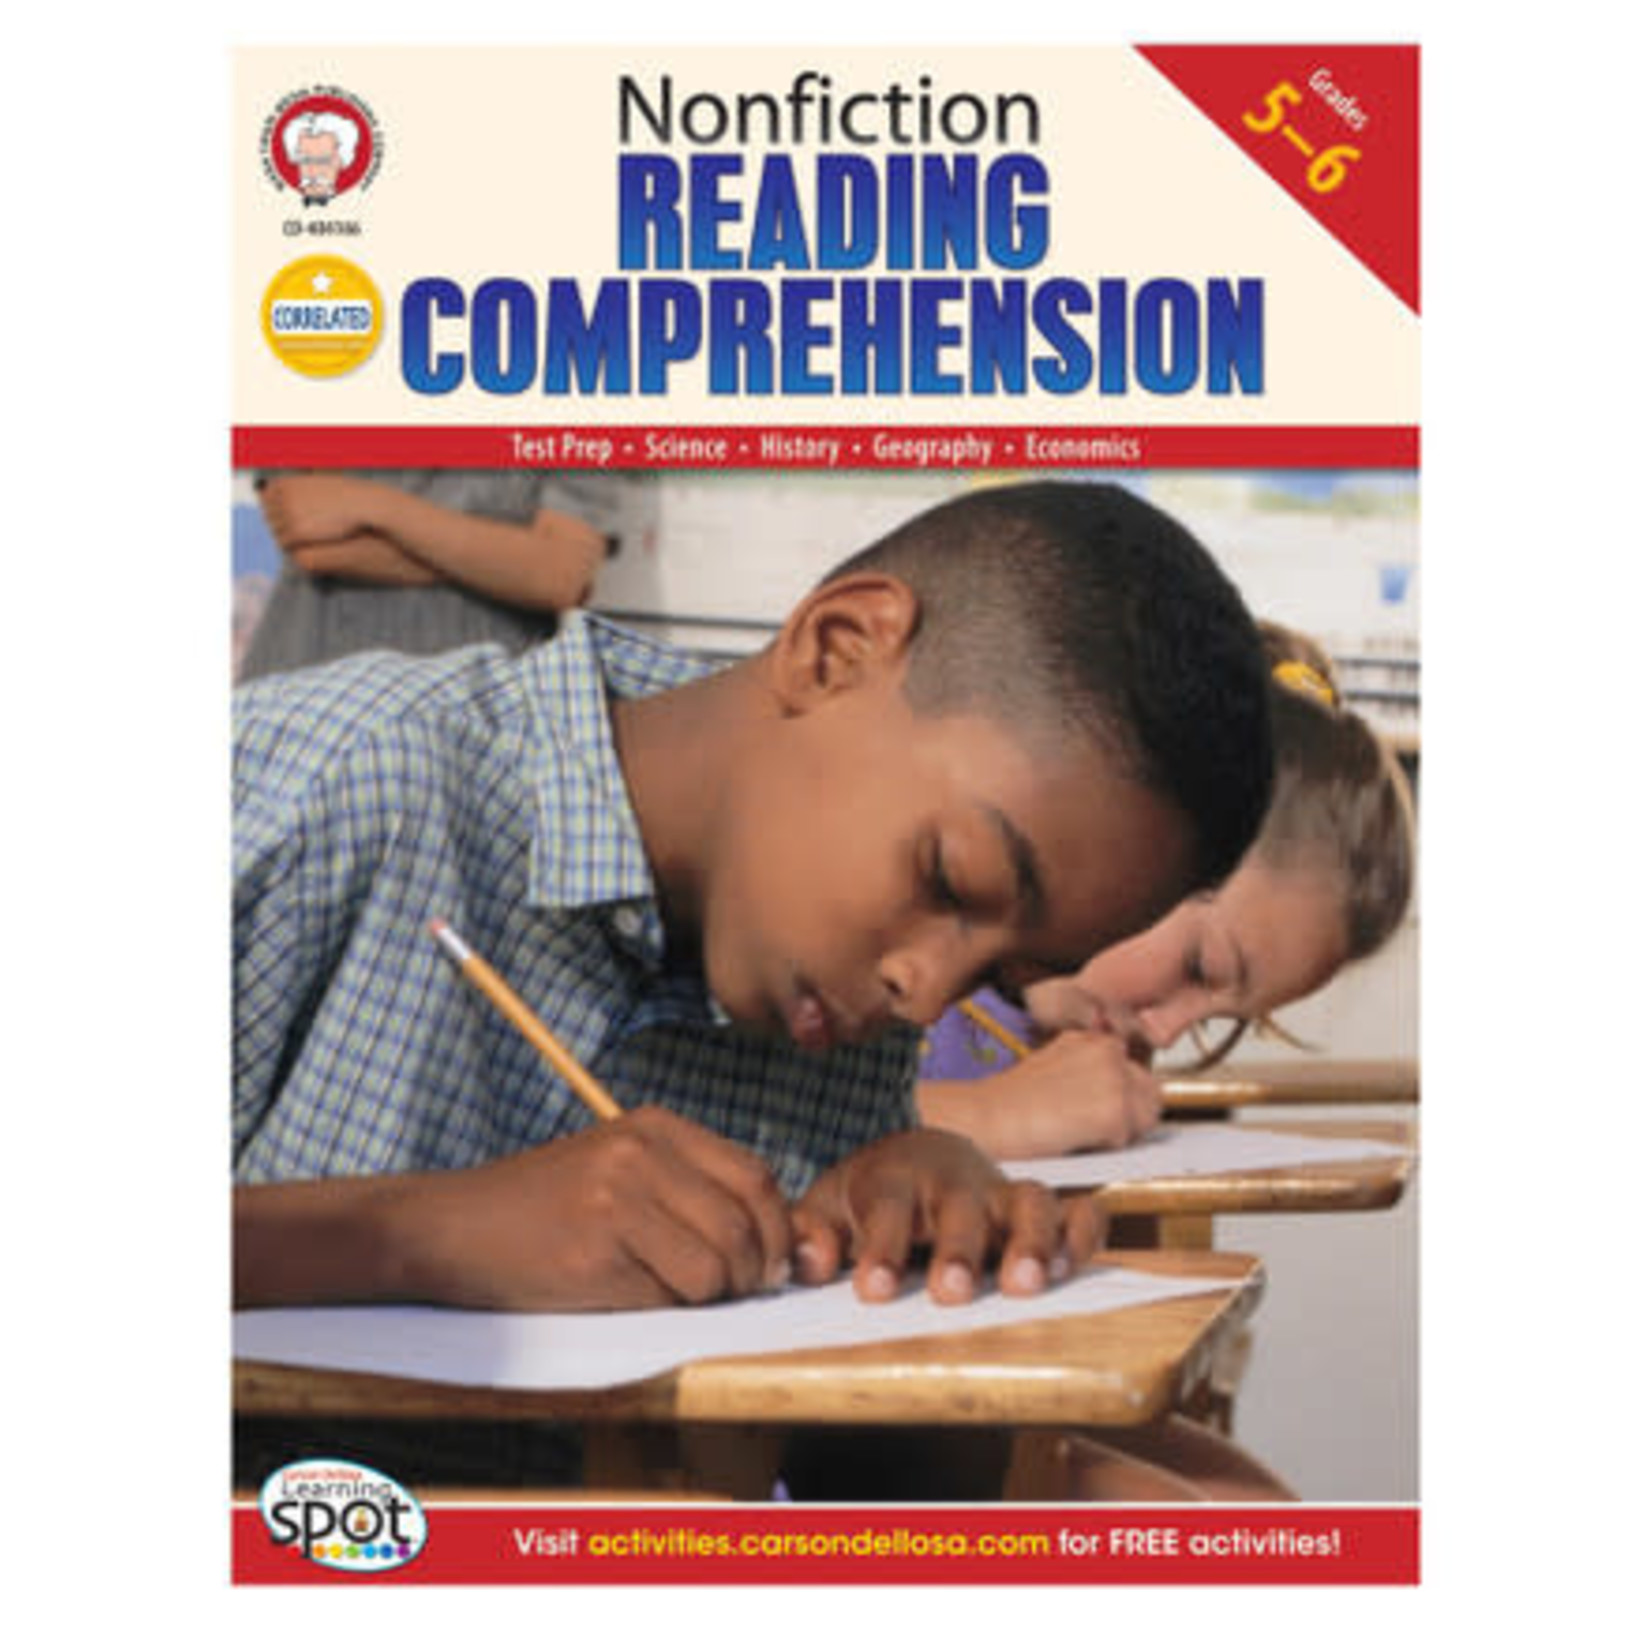 CARSON DELLOSA PUBLISHING CO Nonfiction Reading Comprehension Resource Book Grade 5-6 Paperback